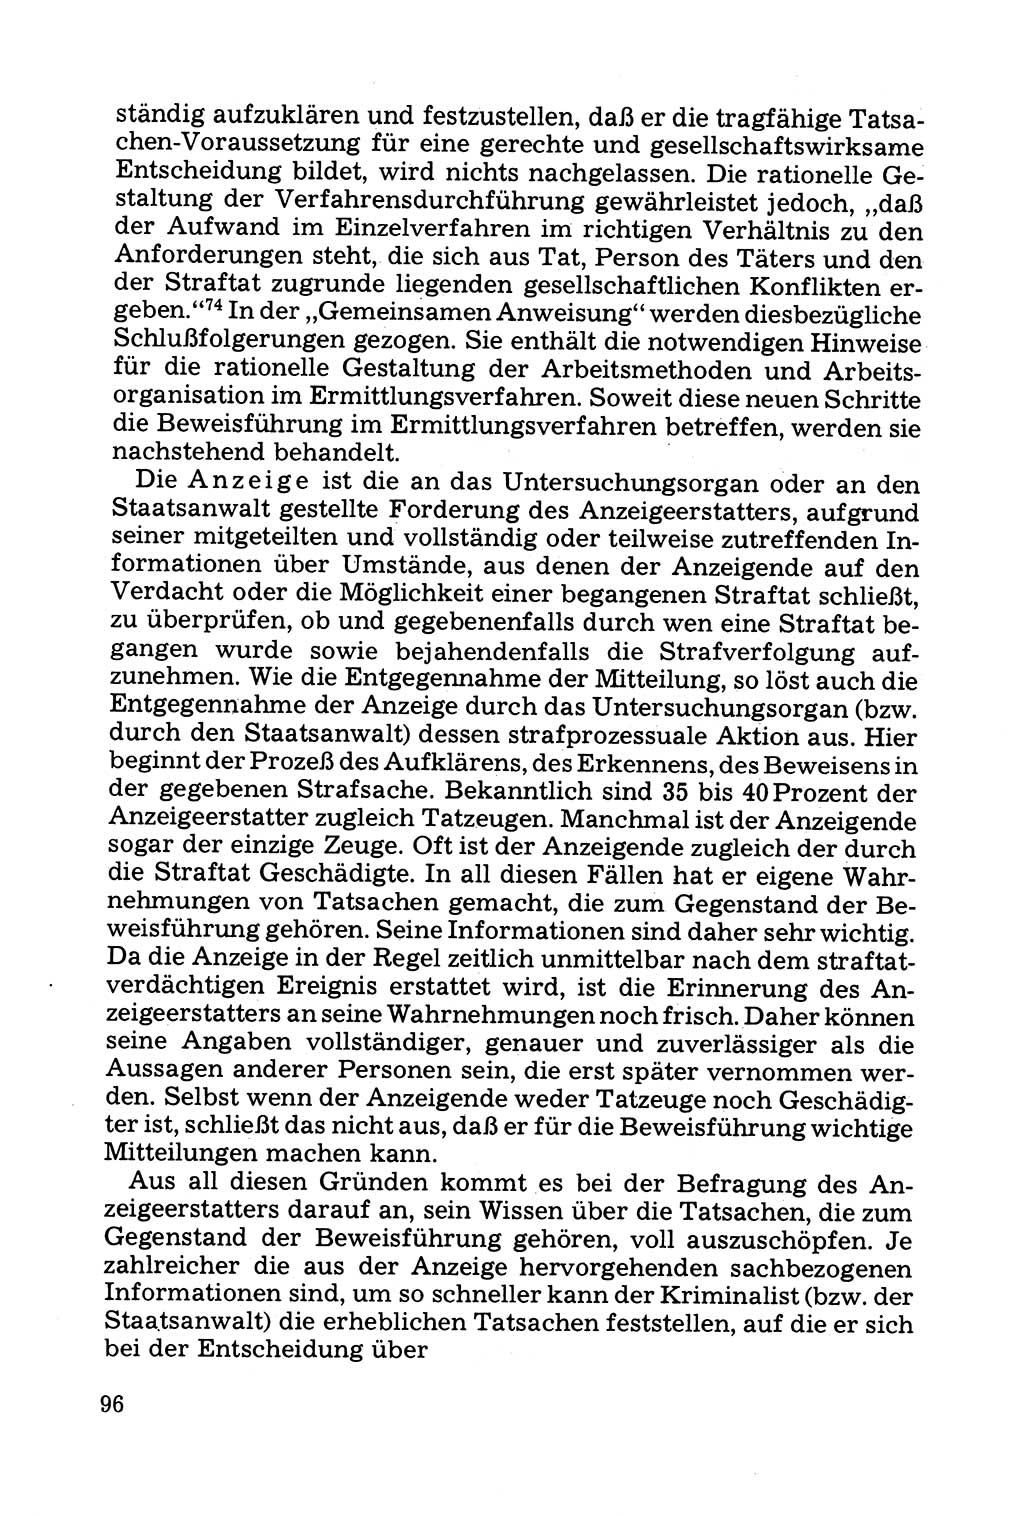 Grundfragen der Beweisführung im Ermittlungsverfahren [Deutsche Demokratische Republik (DDR)] 1980, Seite 96 (Bws.-Fhrg. EV DDR 1980, S. 96)